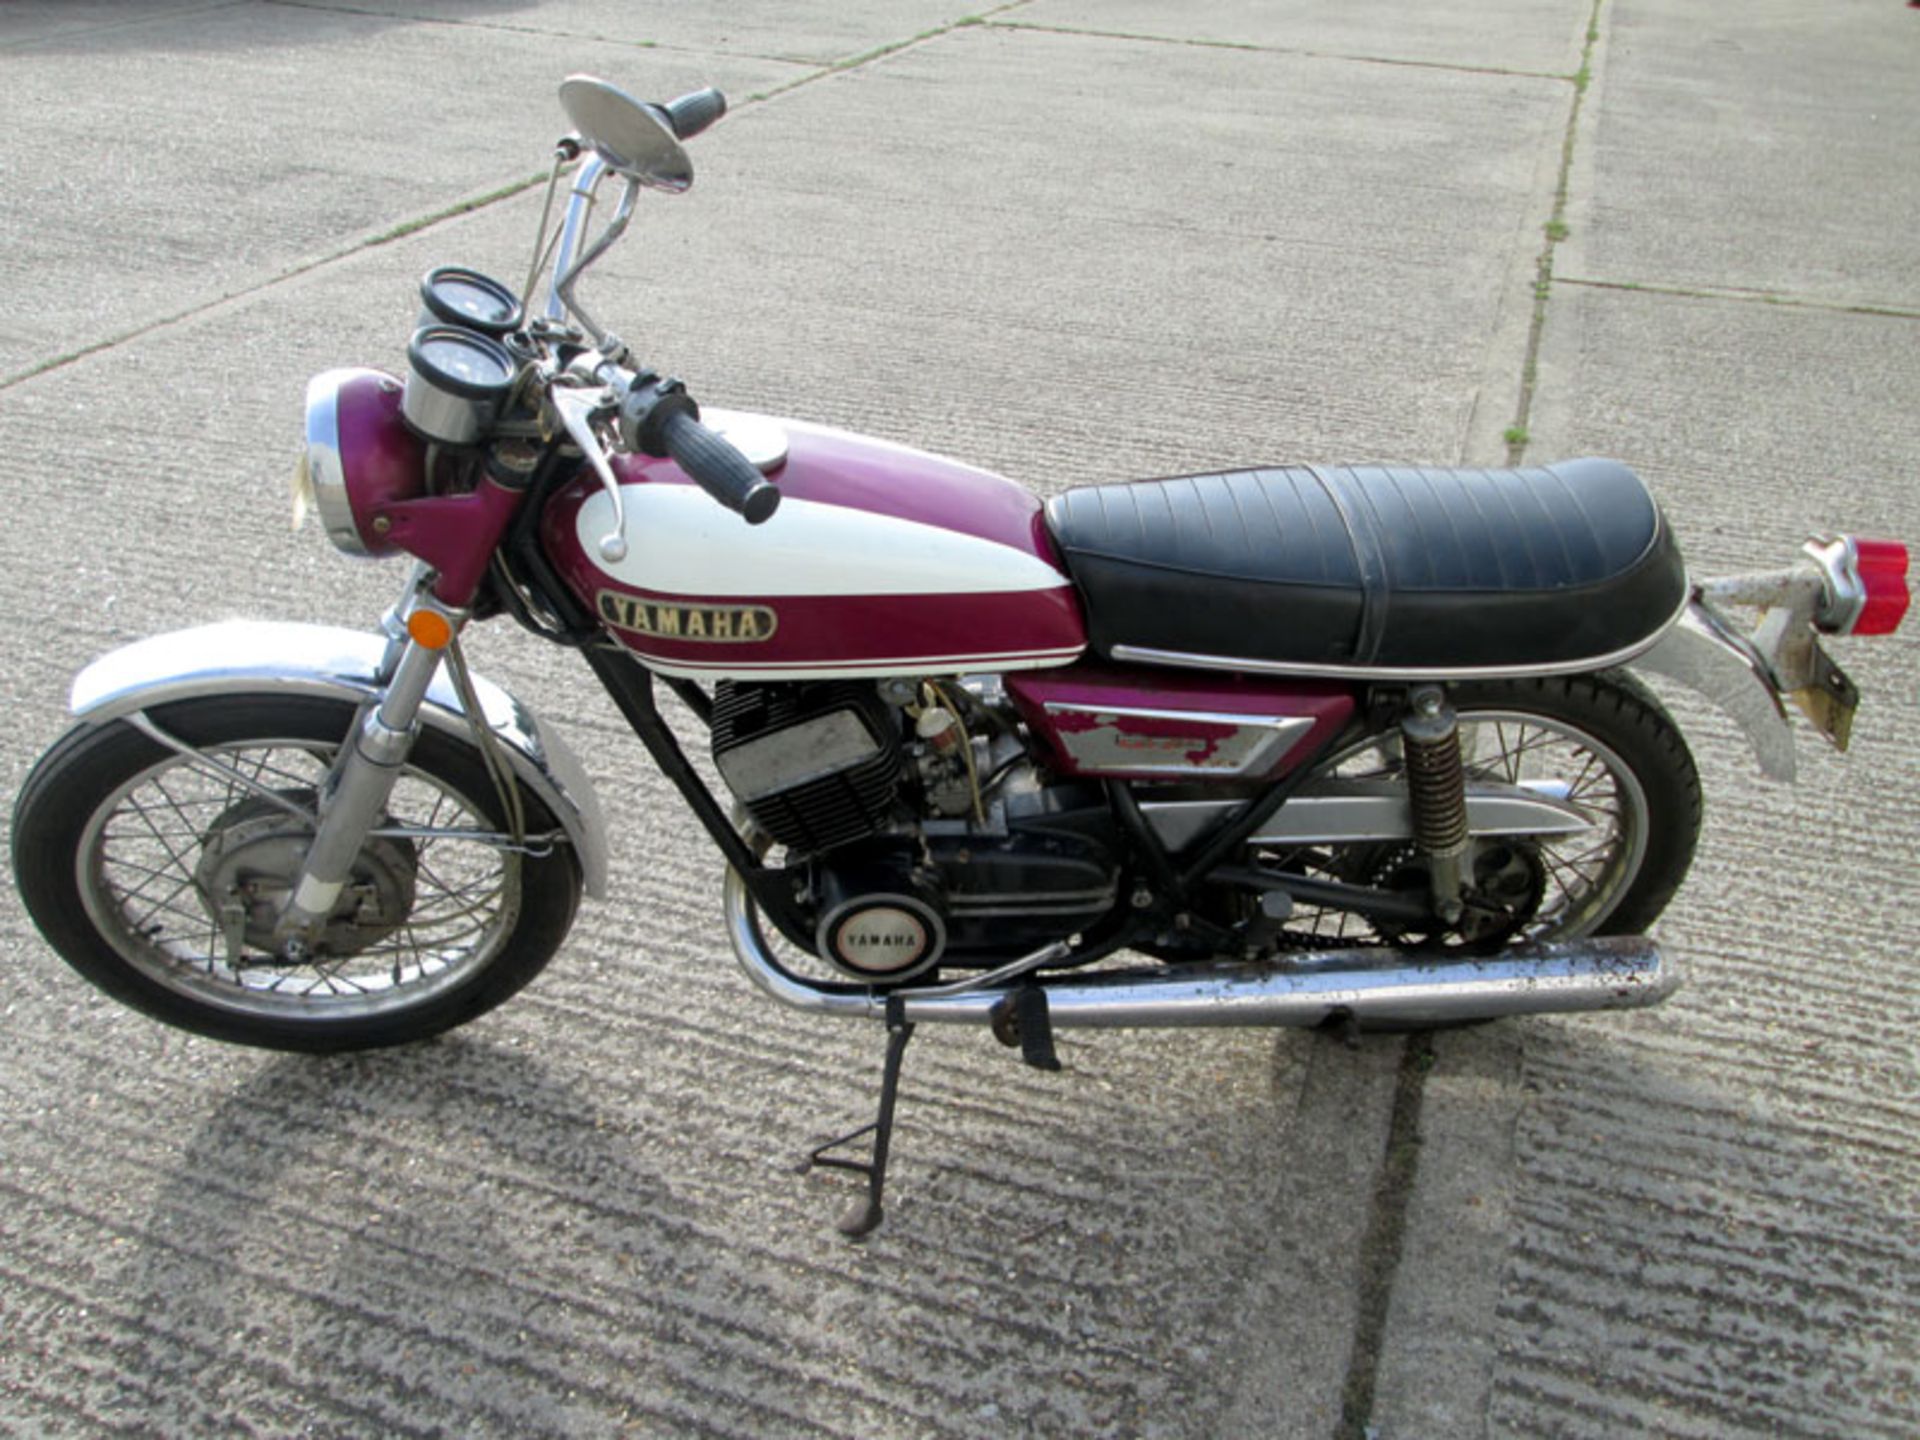 1970 Yamaha RD350 - Image 2 of 2